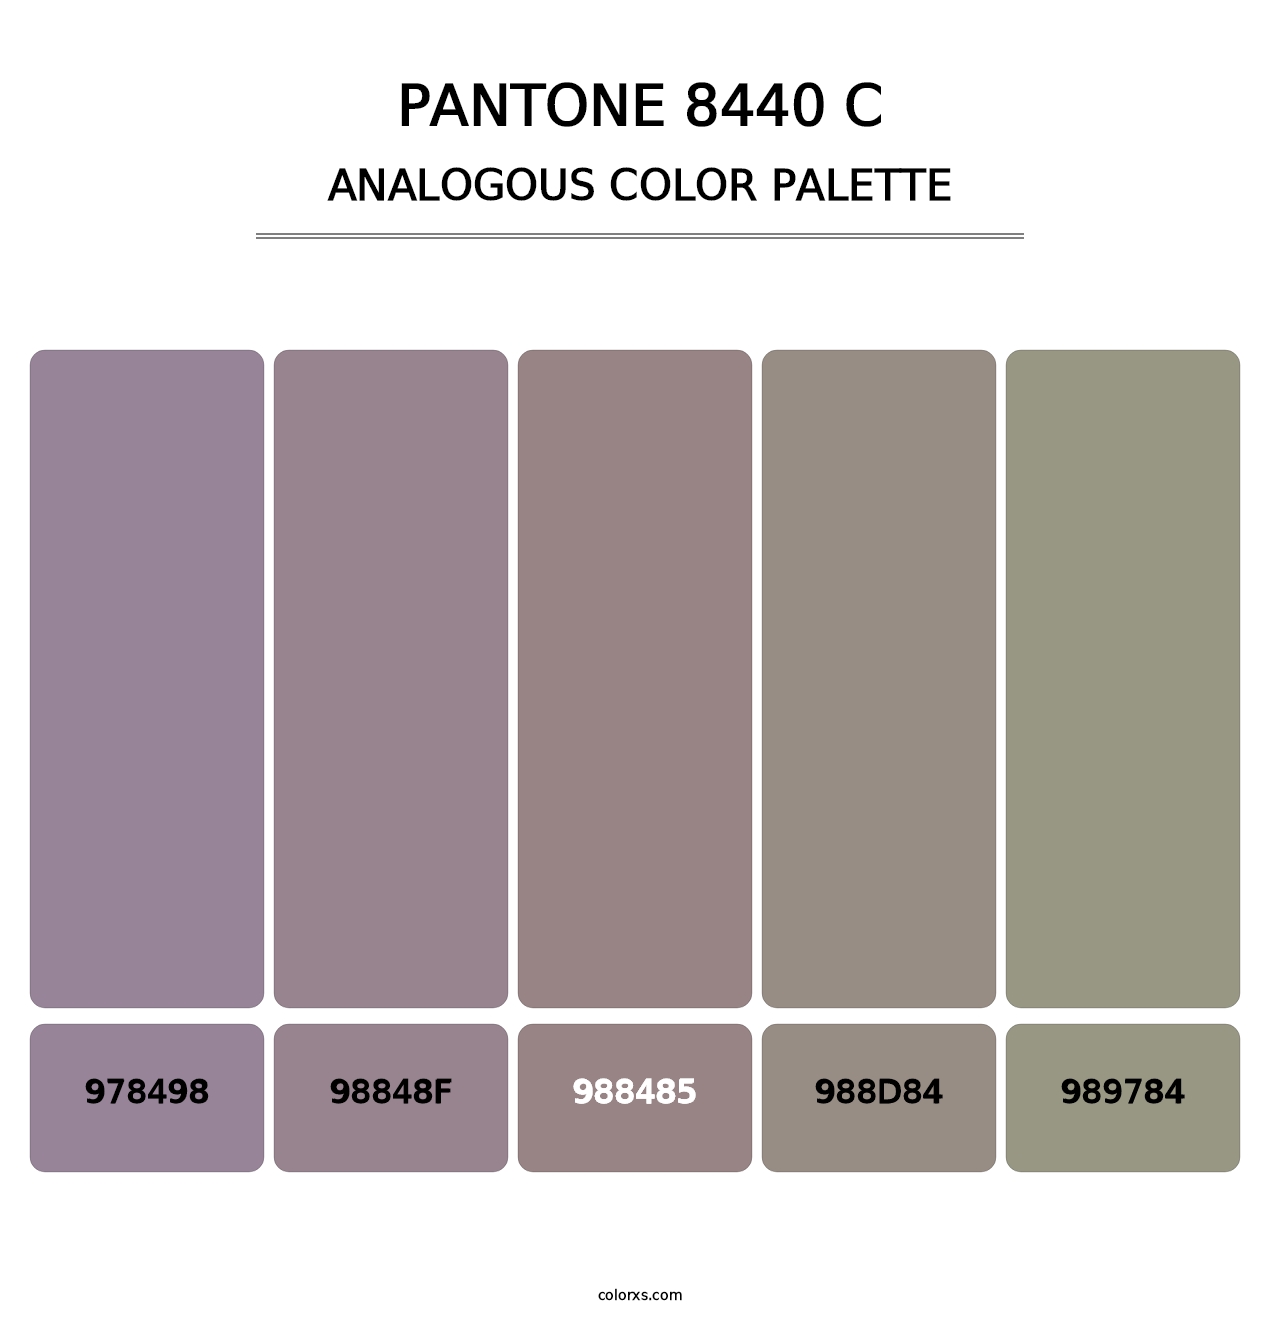 PANTONE 8440 C - Analogous Color Palette